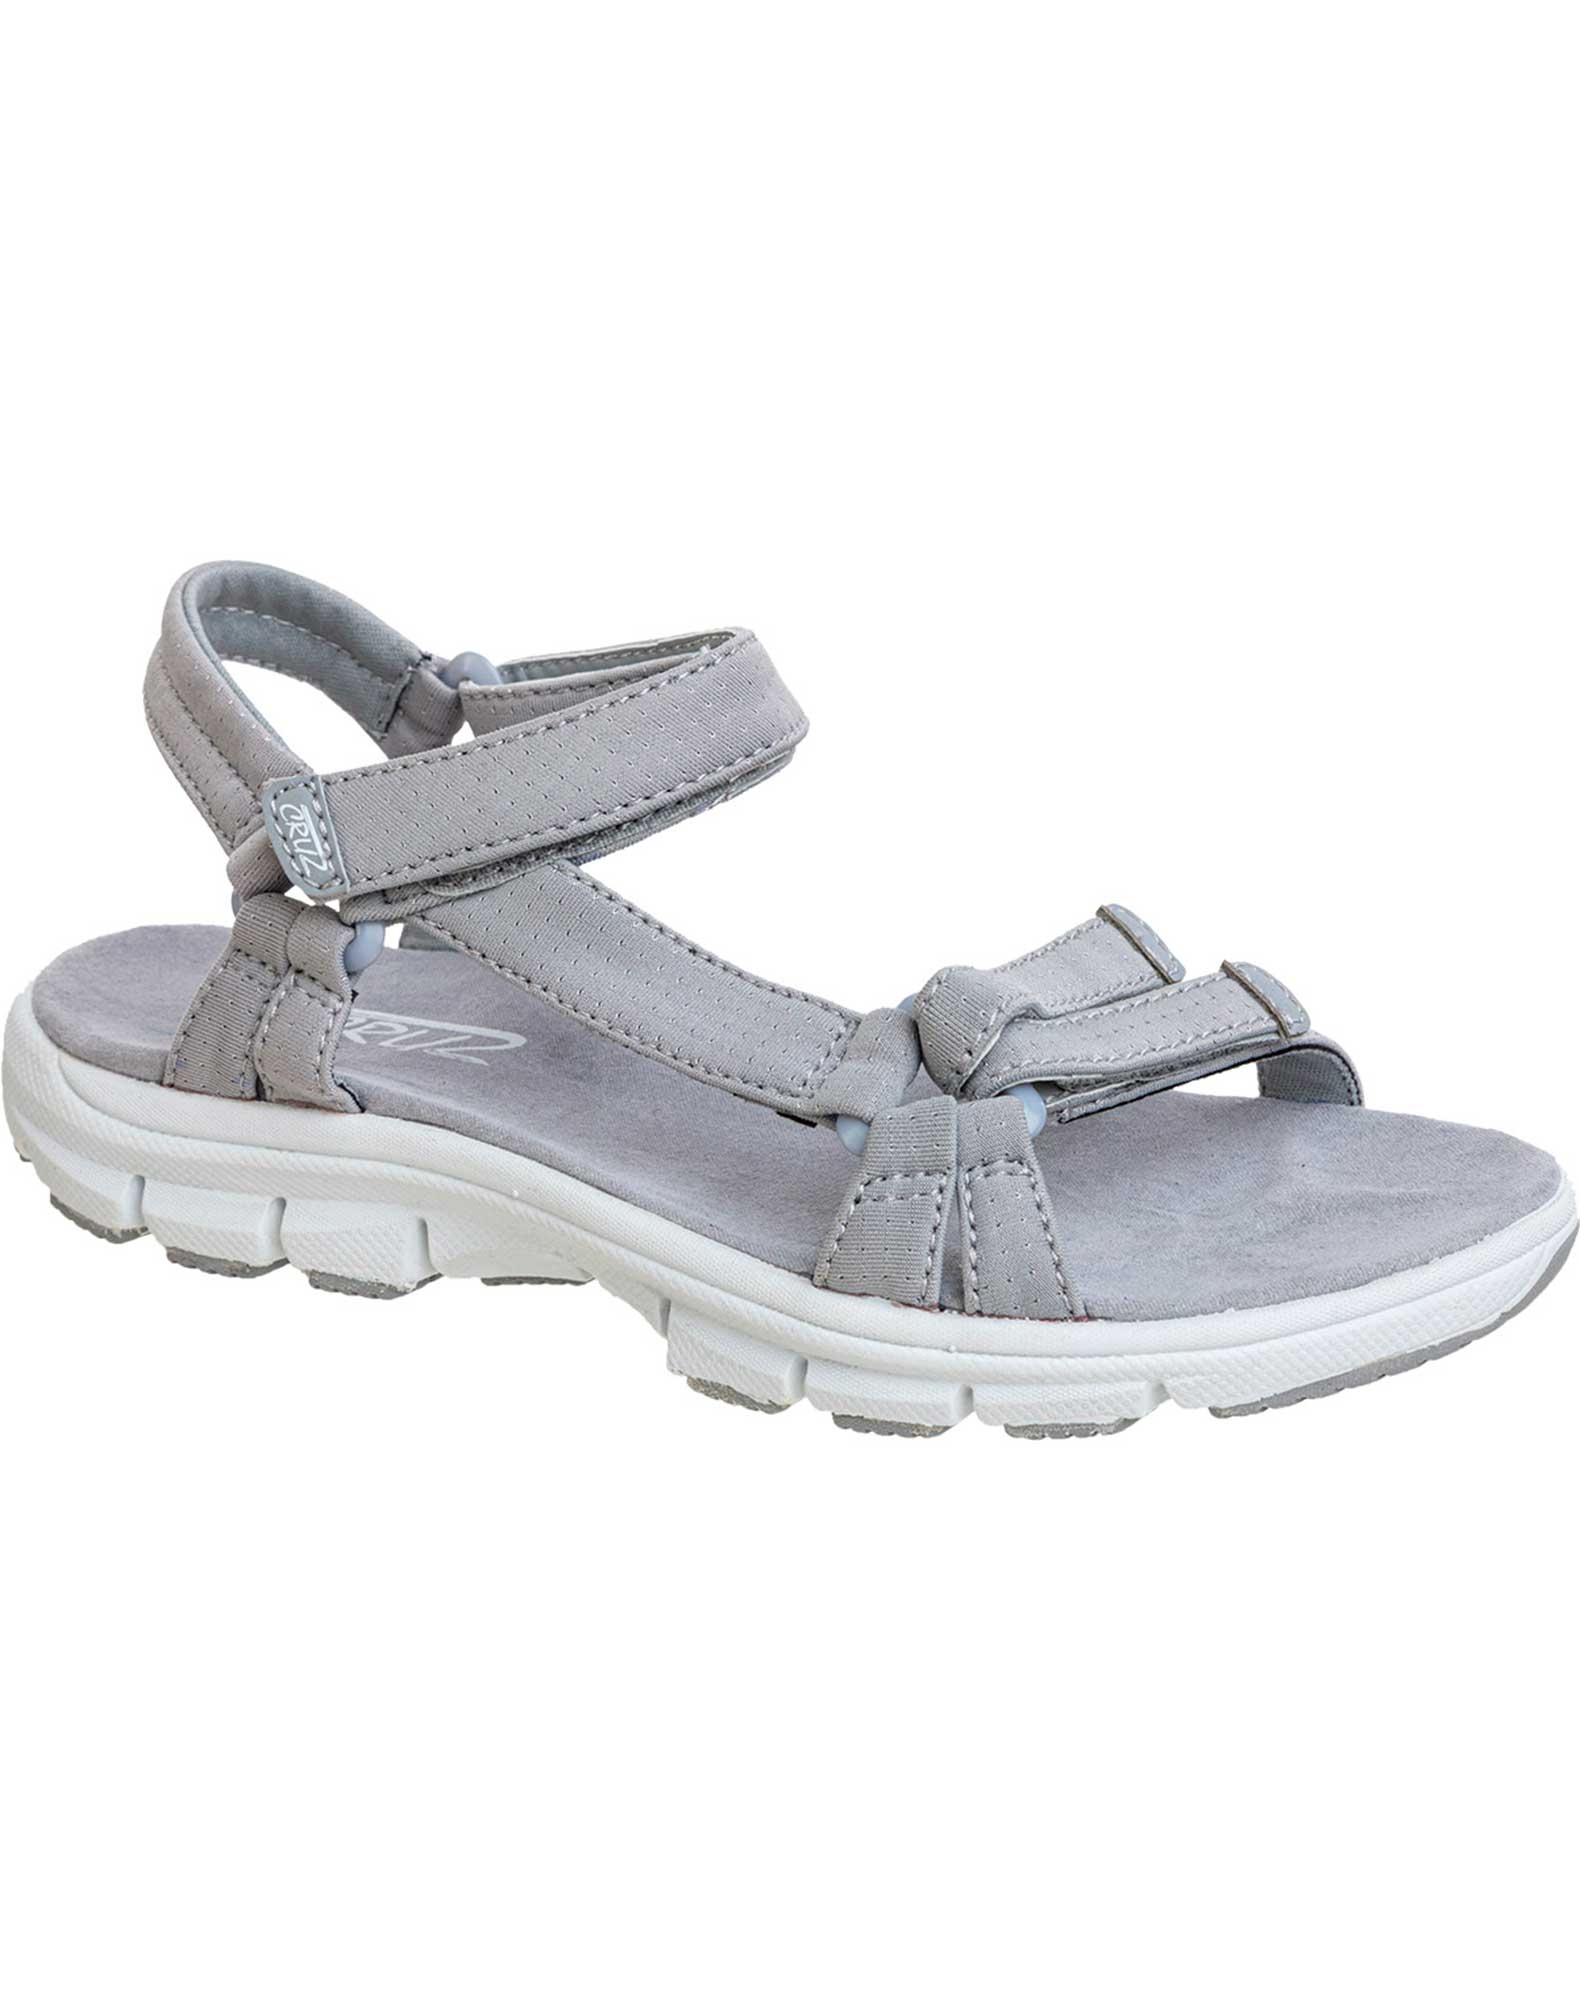 værksted Søndag Indtil nu Køb Cruz Bernao sandaler til dame i grå